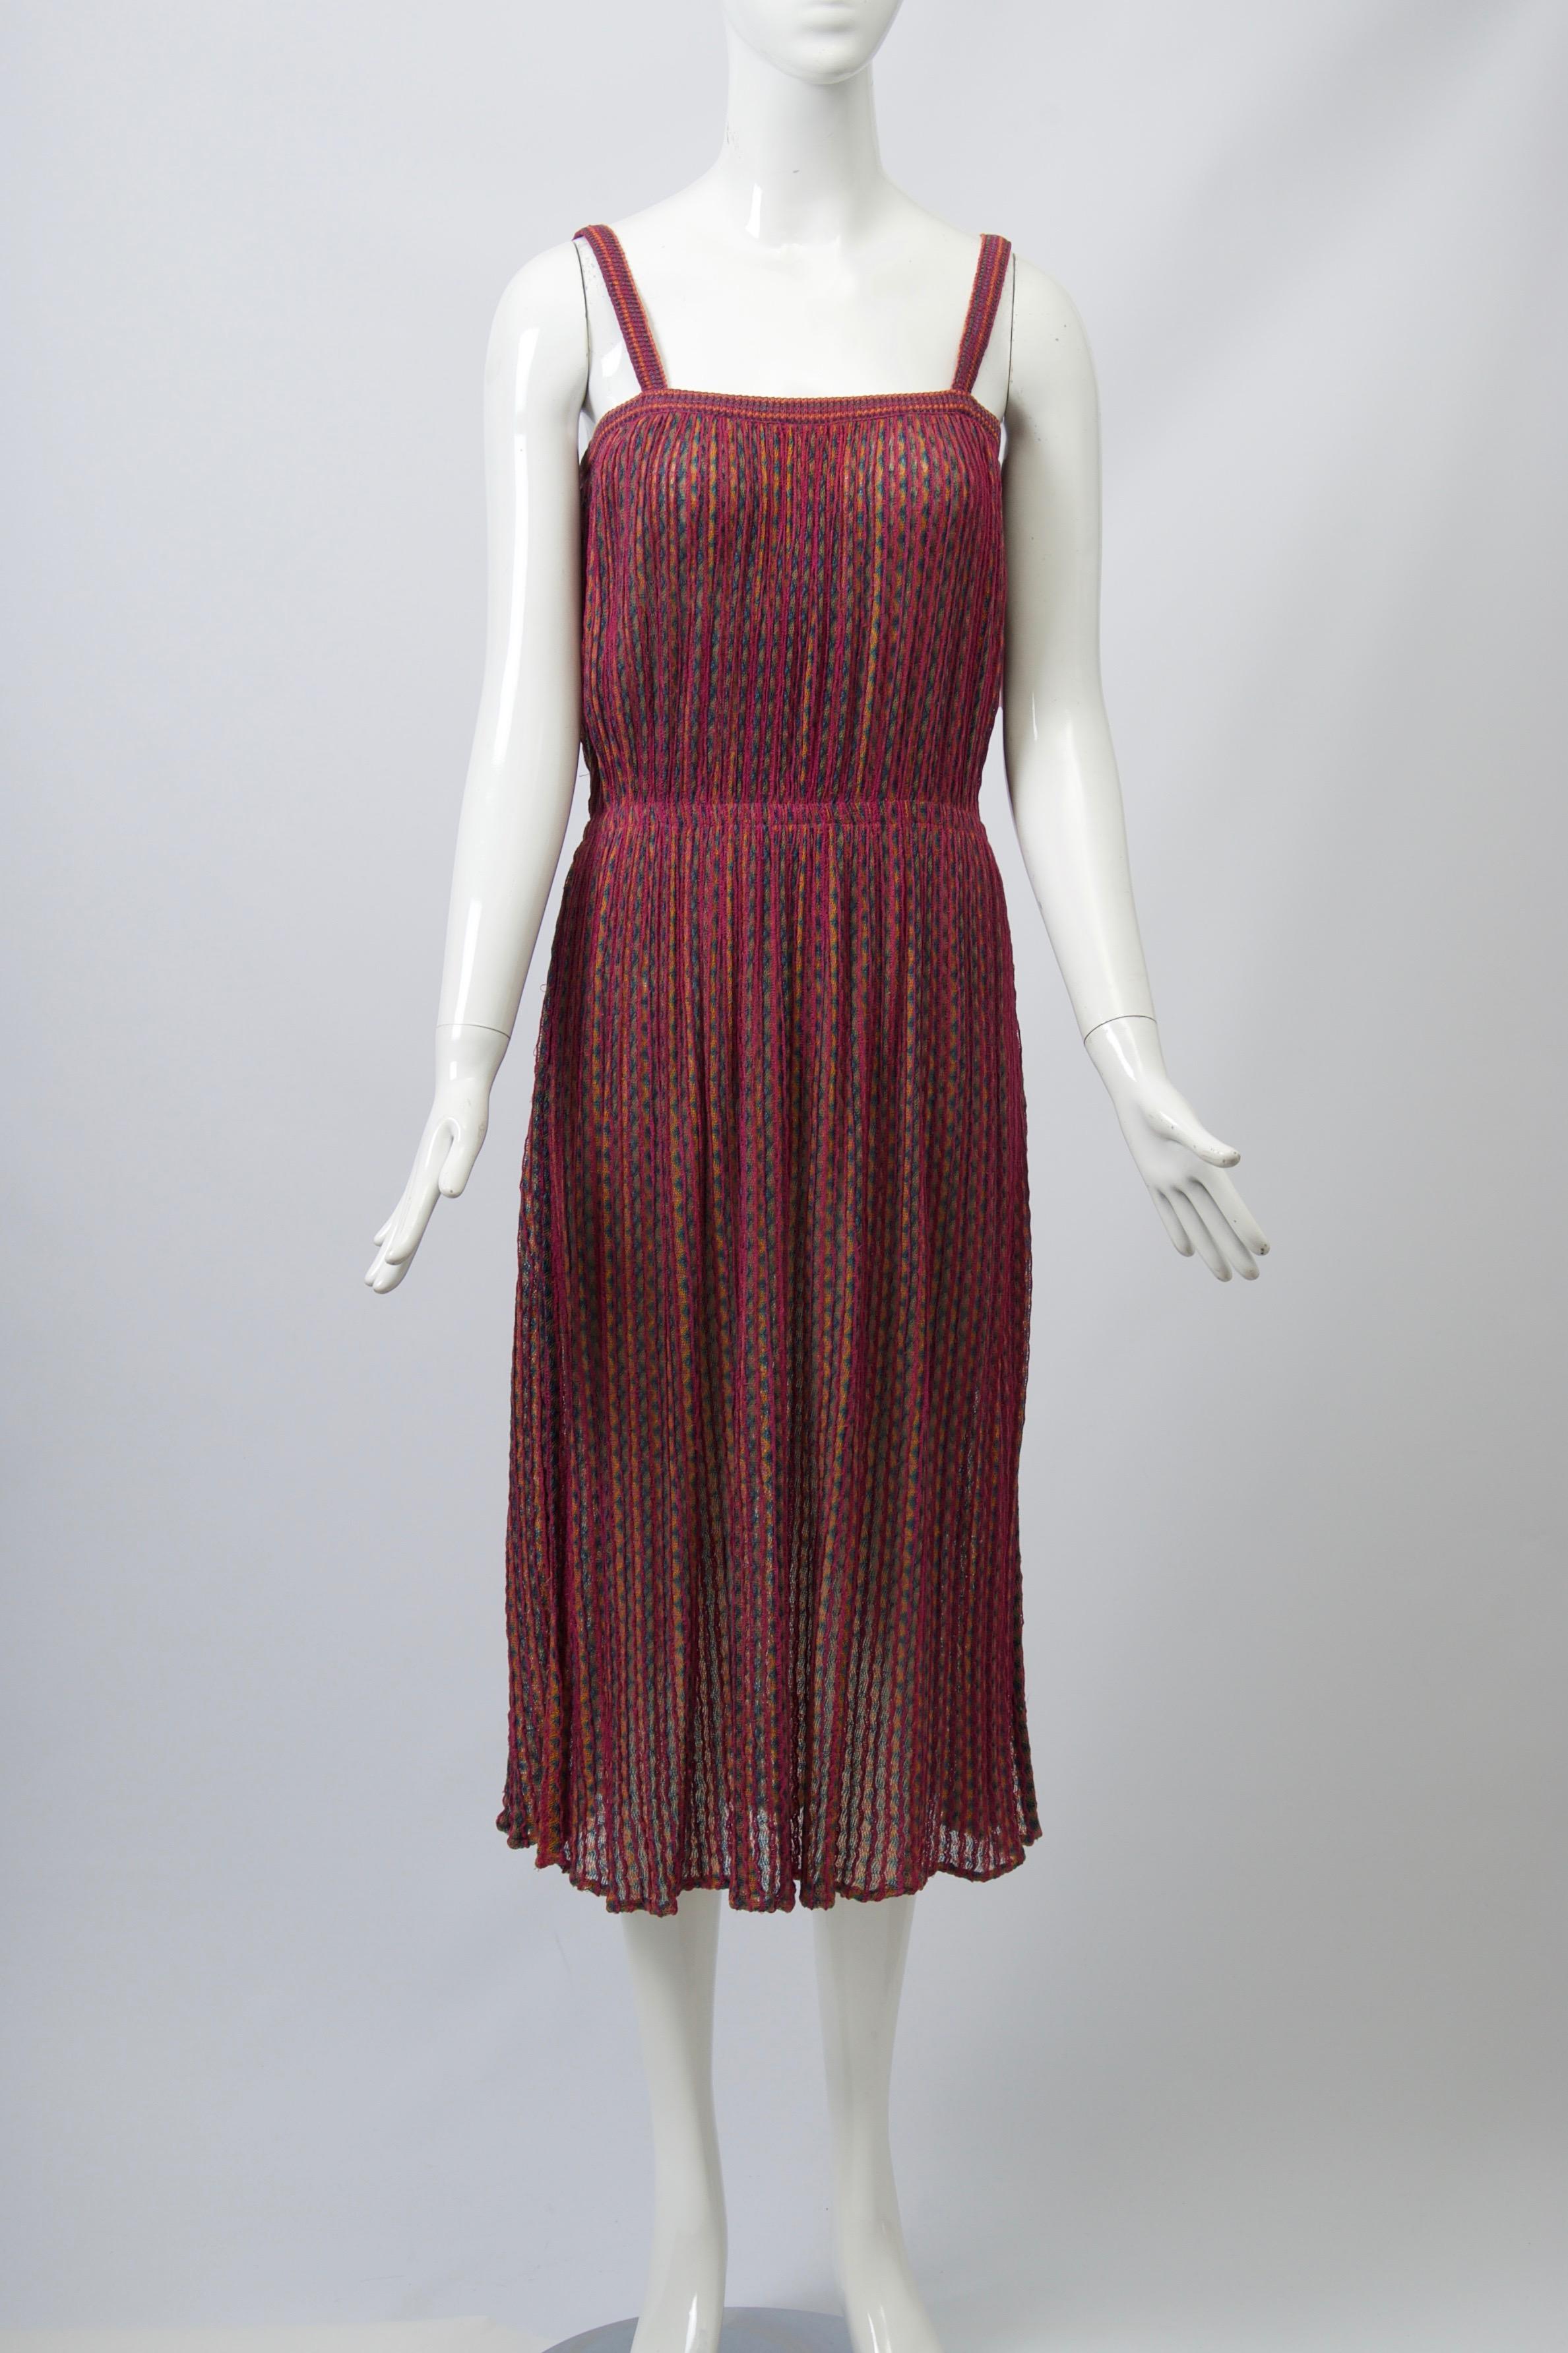 Missoni Sommerkleid, ca. 1970-80er Jahre, mit Spaghetti-Trägern und innenliegendem Gummiband, das den Stoff in der Taille zusammenfasst. Überwiegend himbeerfarbener Zickzack-Streifenstrick. Leicht, verpackbar und einfach zu tragen. Unbeschriftet,